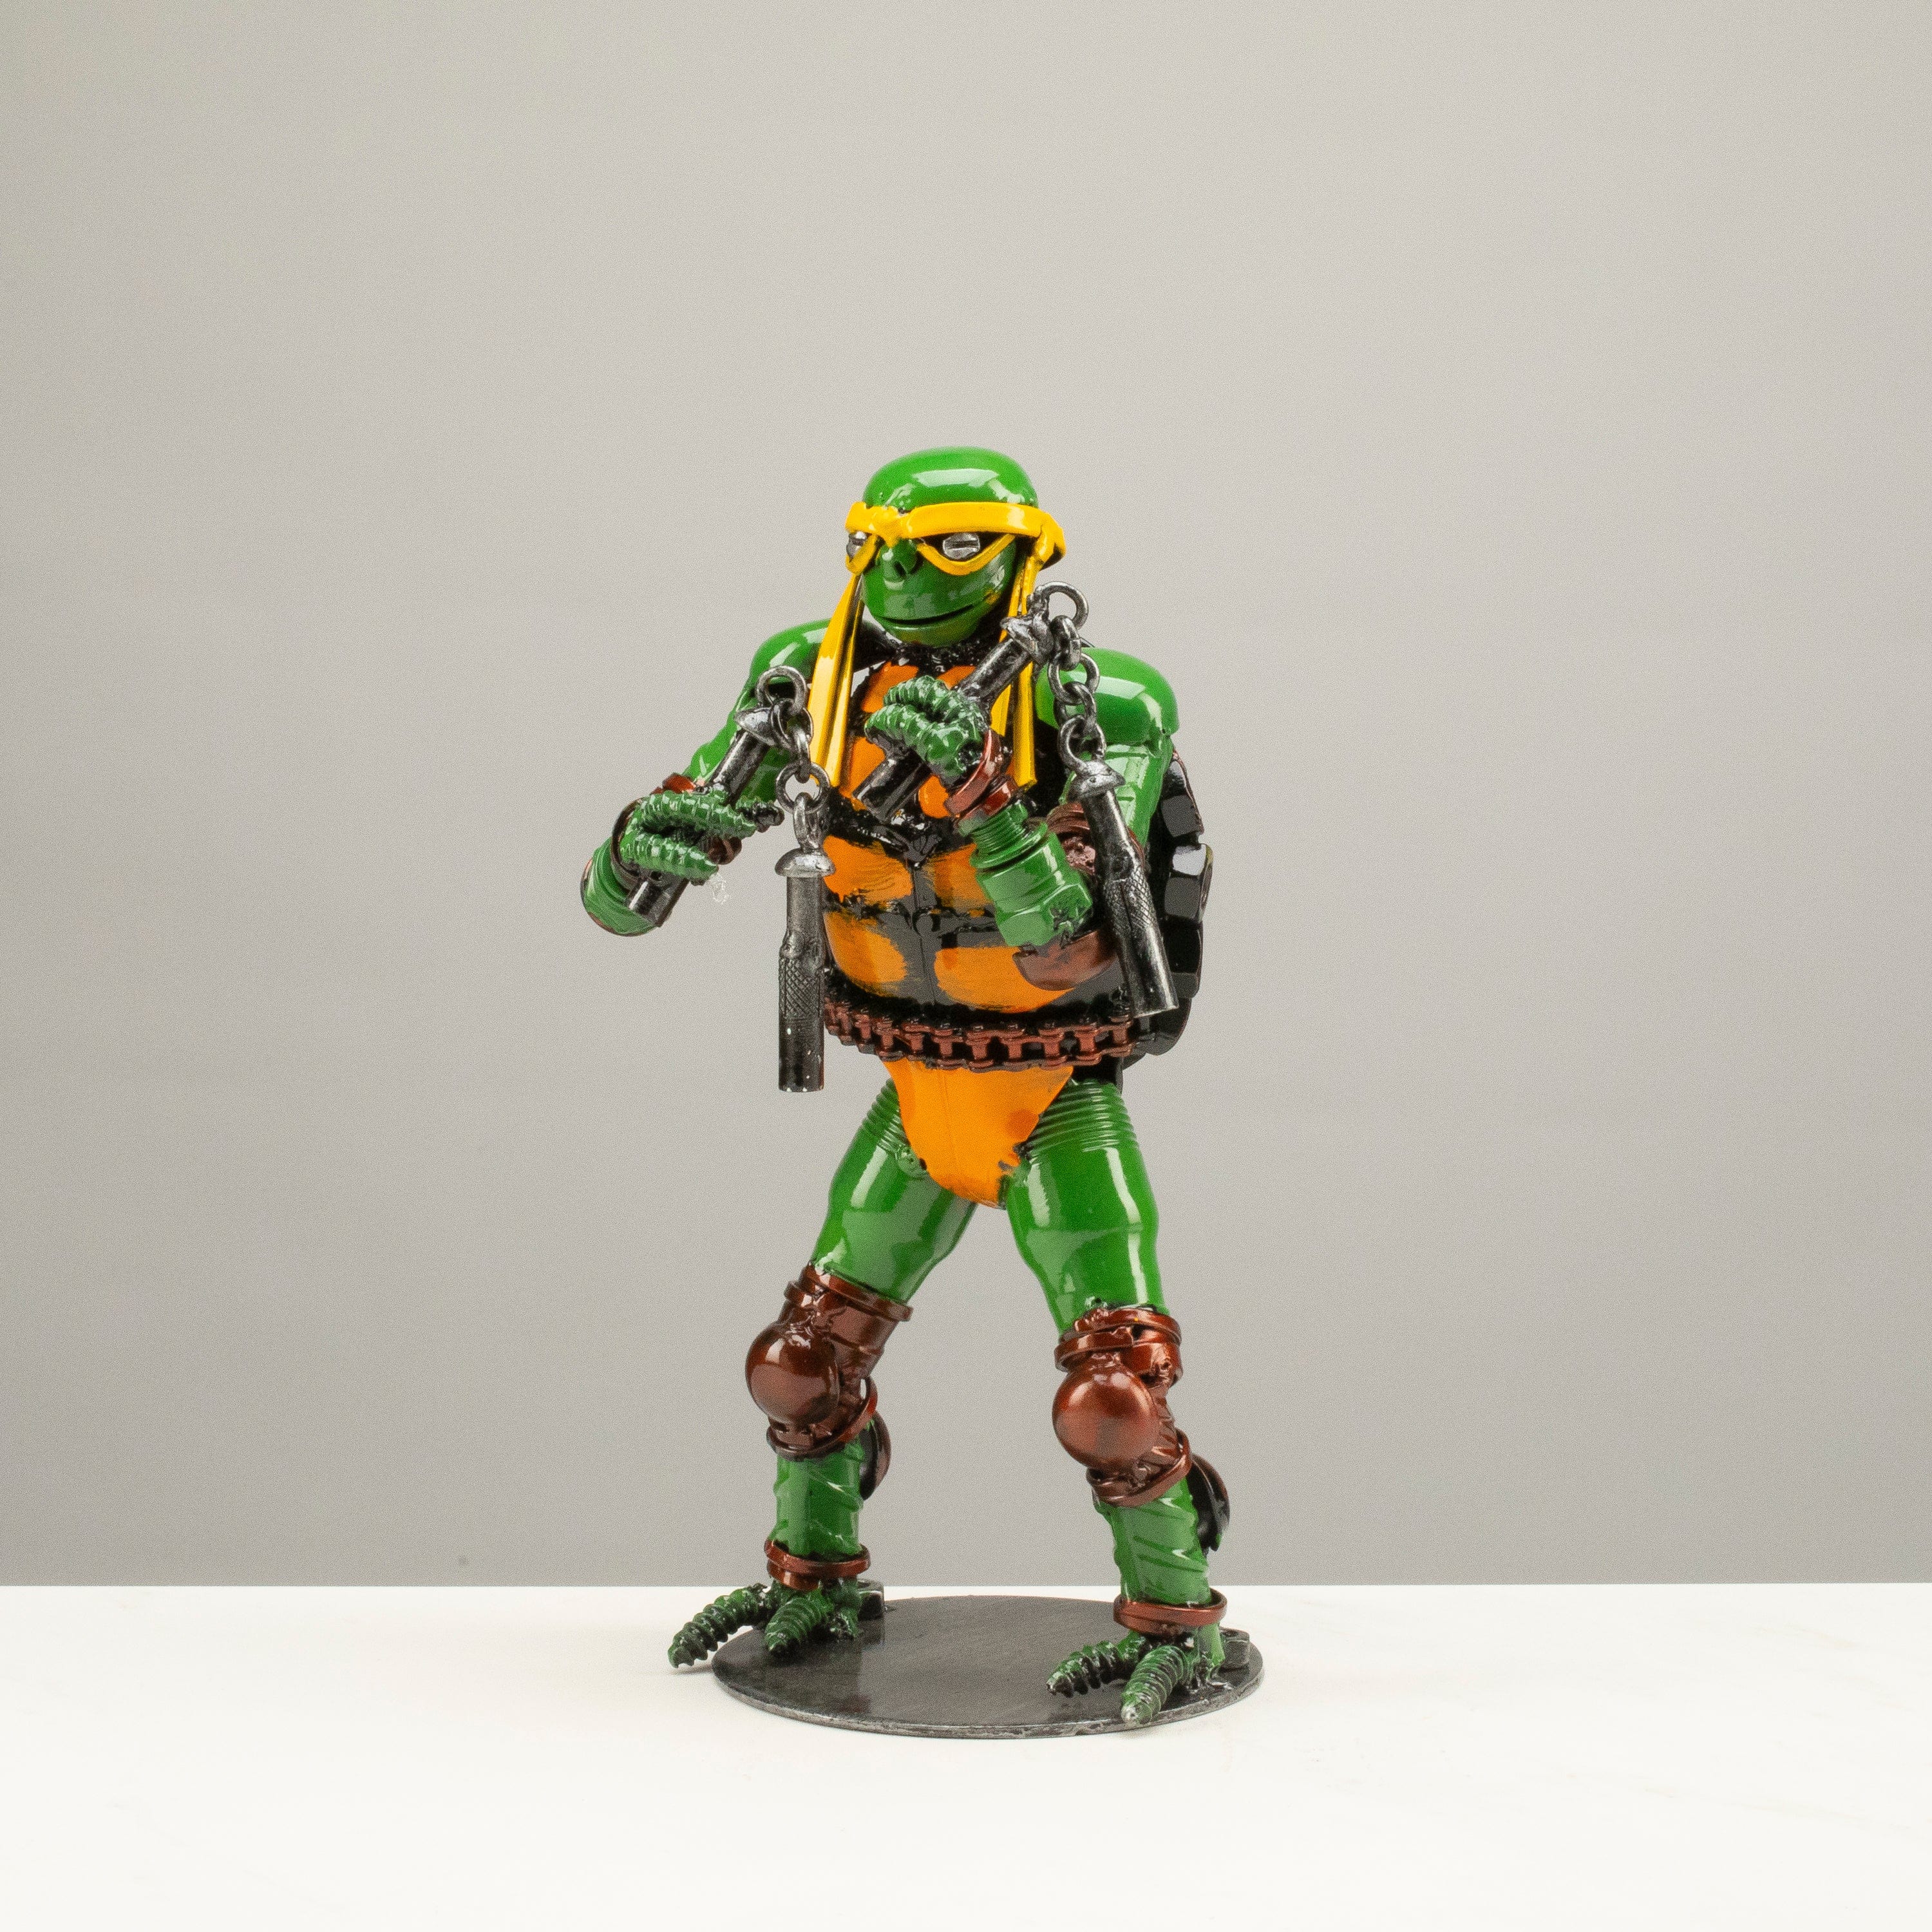 Kalifano Recycled Metal Art 9.5" Michelangelo Ninja Turtle Inspired Recycled Metal Sculpture RMS-600NTM-N